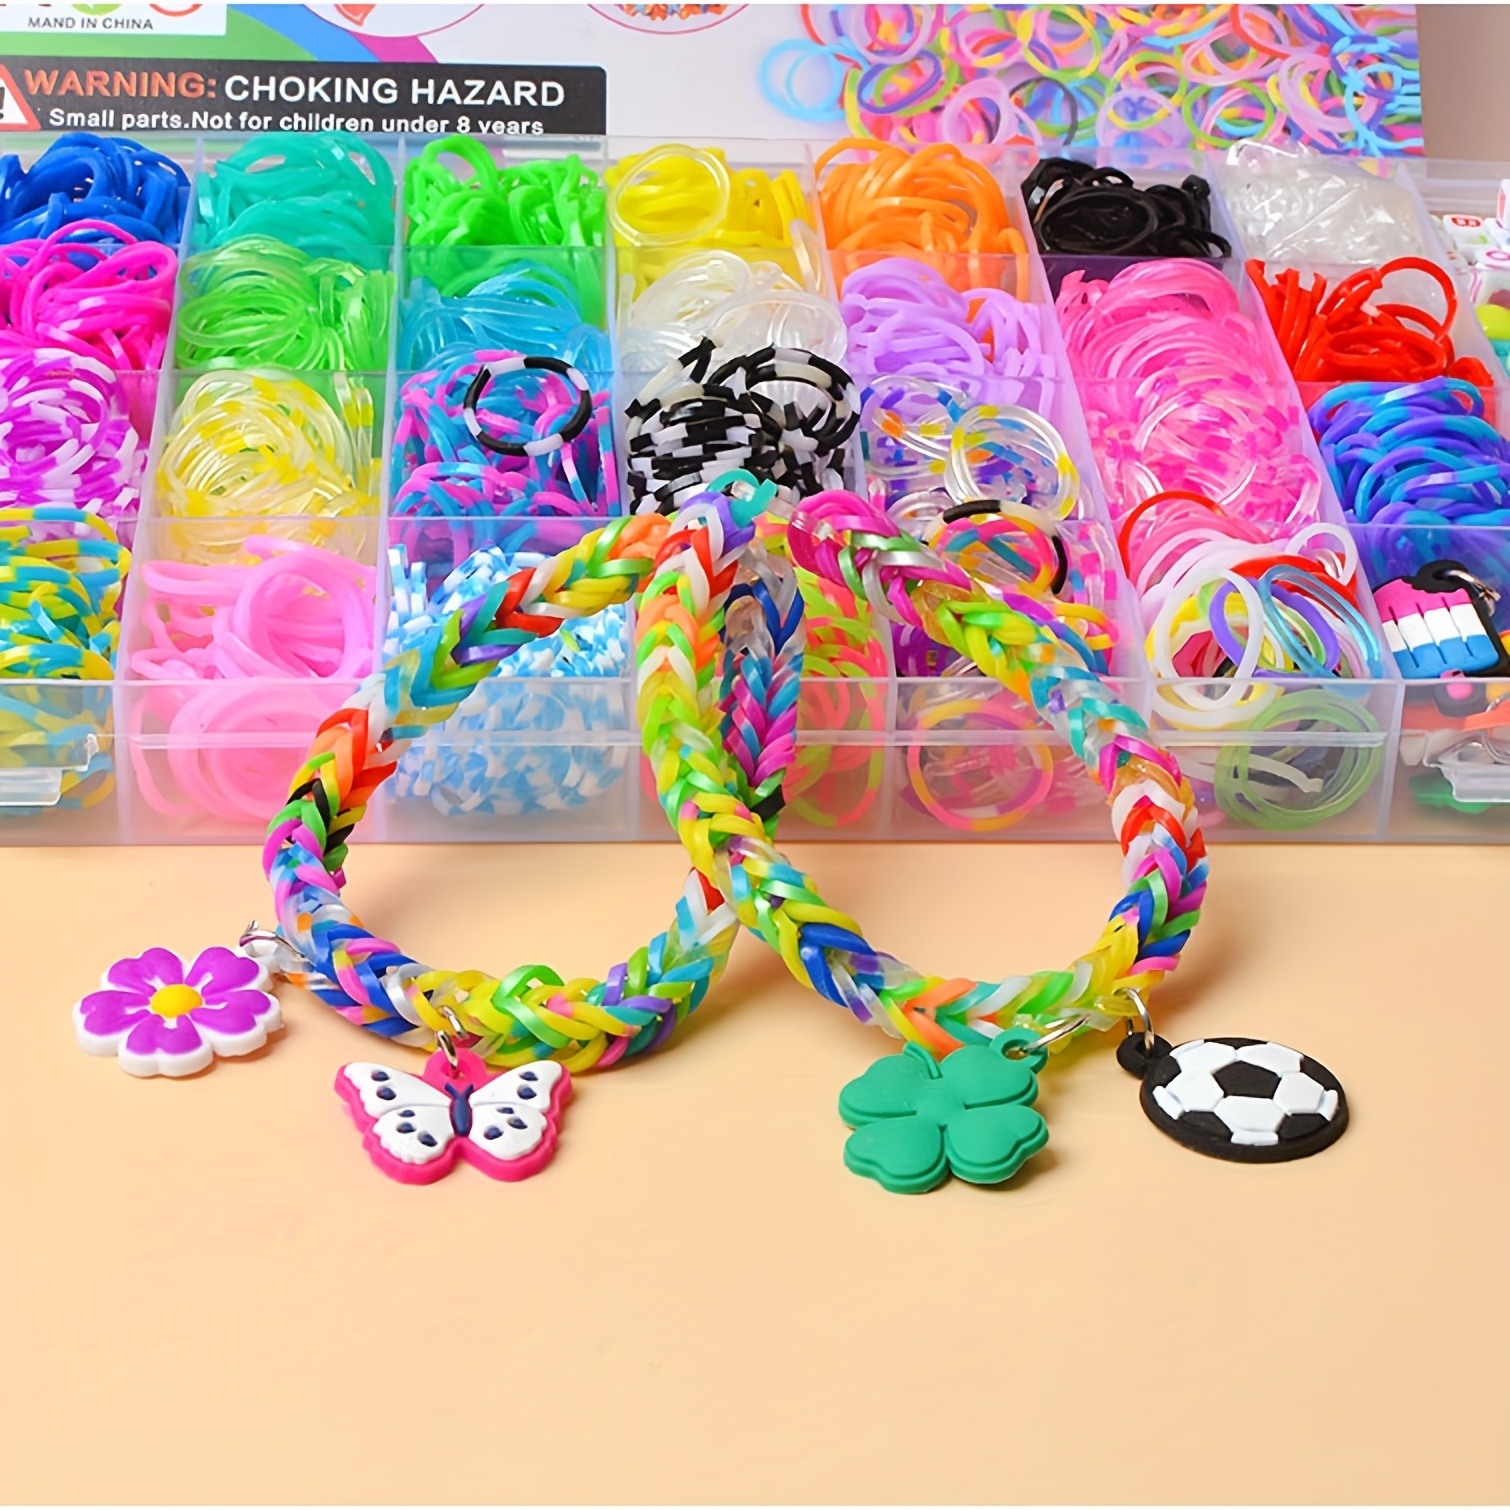 Loom Bracelet Making Kit,Colors Rubber Bands Kits DIY Crafting Children's  Toys Loom Bands Bracelet Kit Friendship Craft Kits for Kids : :  Toys & Games